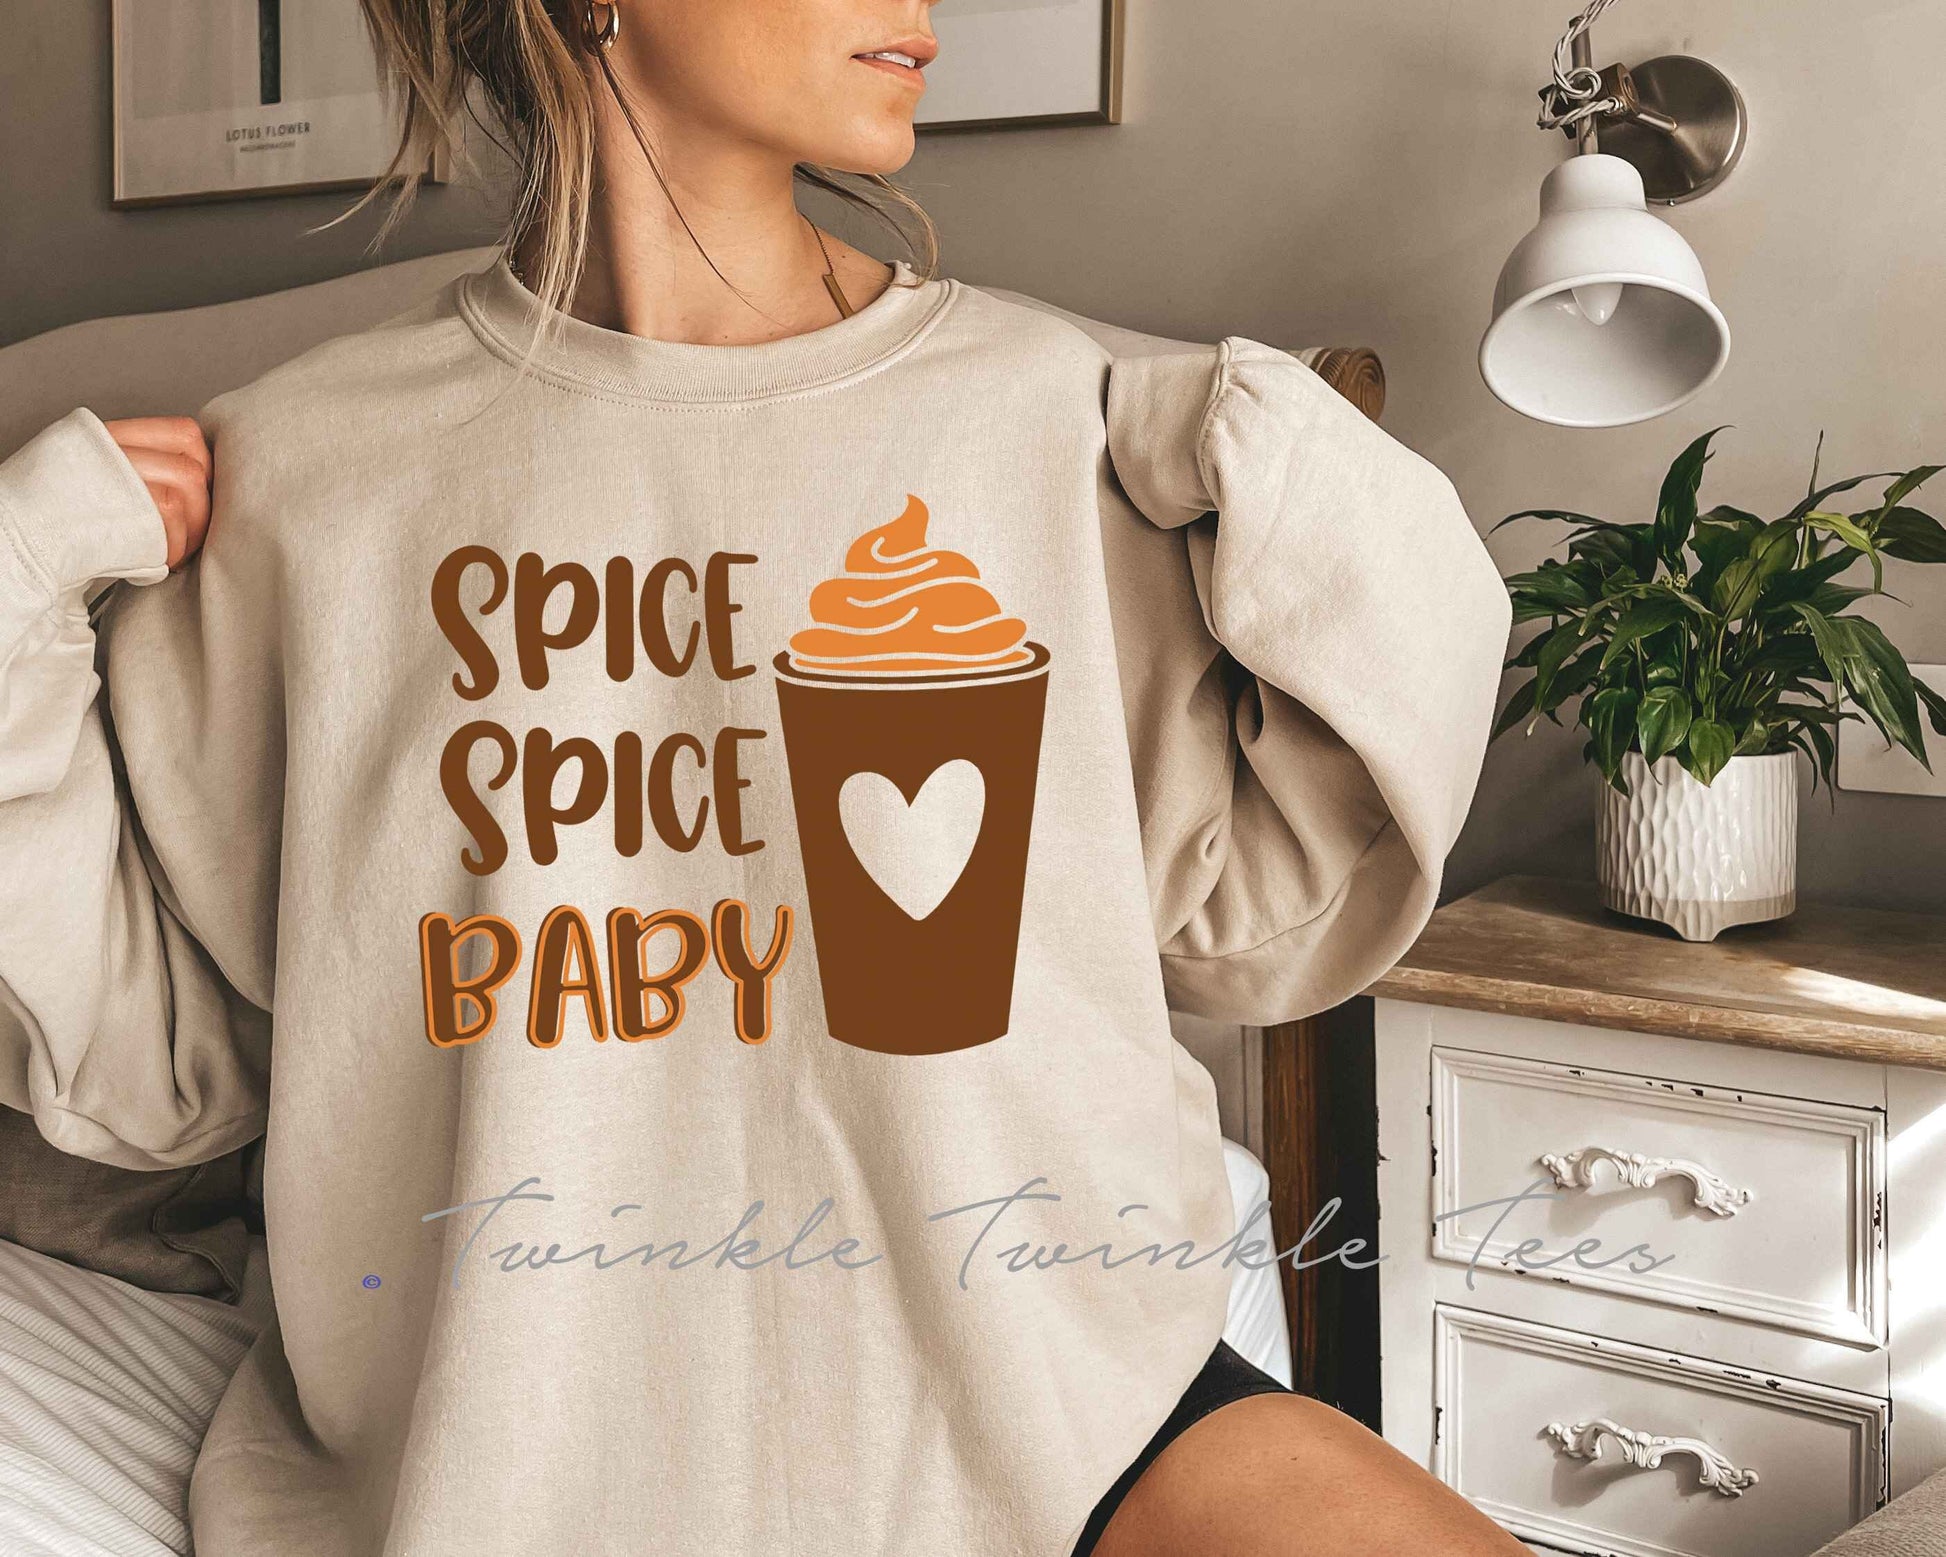 Spice Spice Baby Unisex Crewneck Fleece Pullover Sweatshirt - Pumpkin Spice Season